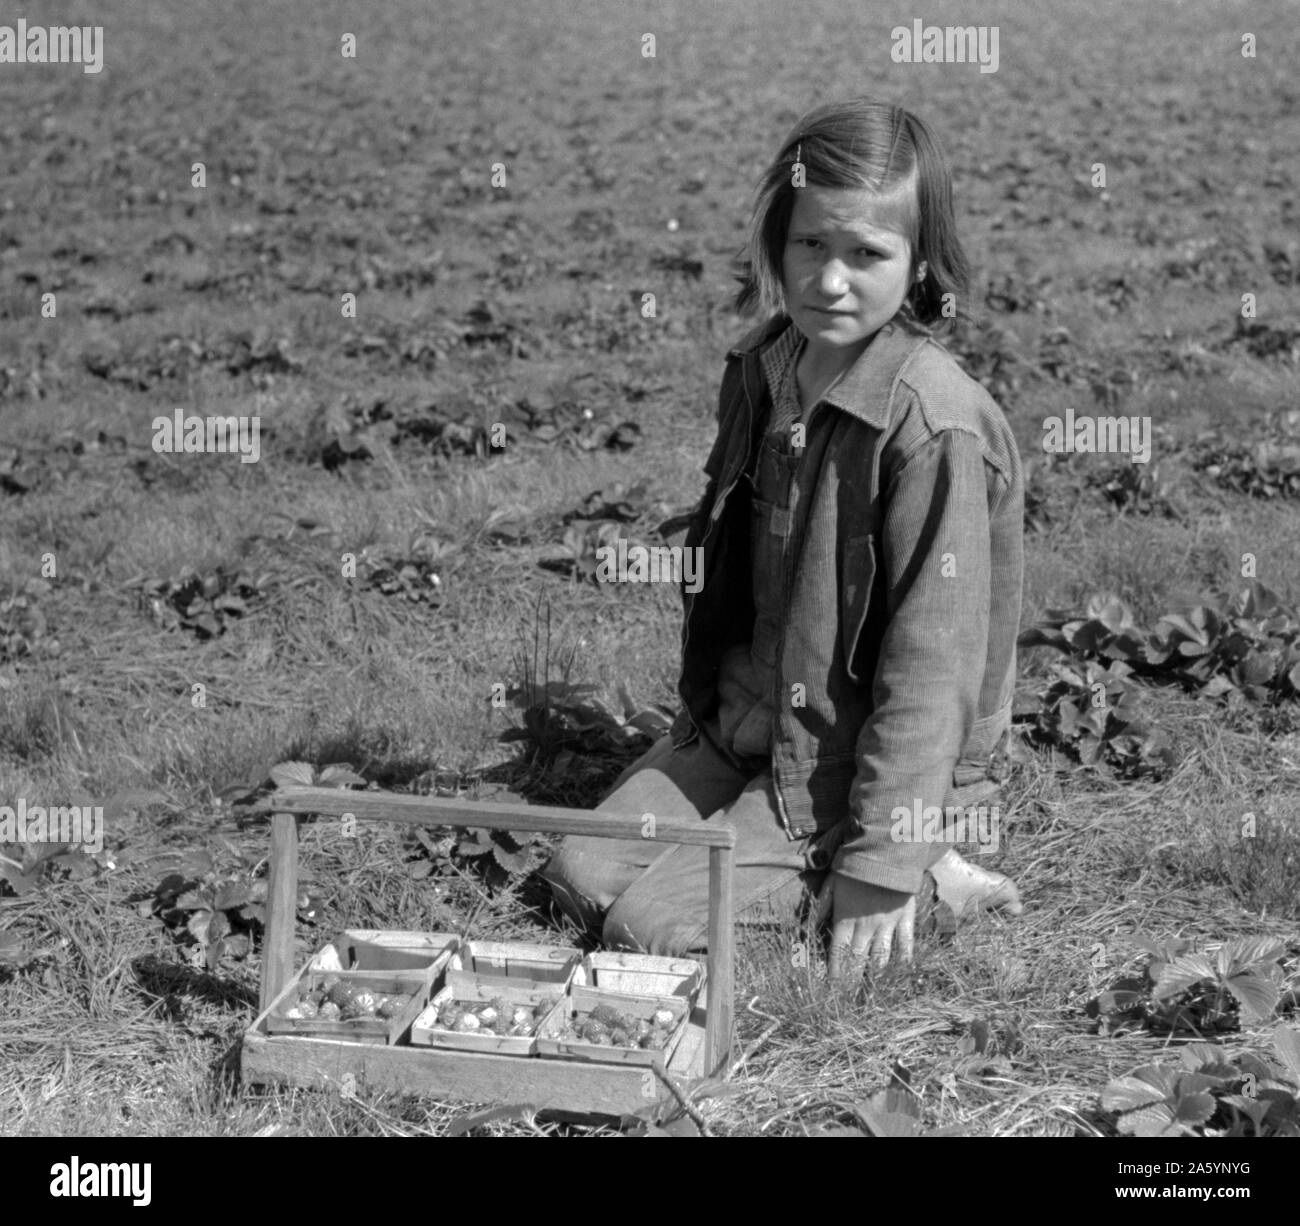 Kind der weißen Migrant berry Arbeiter Erdbeeren pflücken im Feld in der Nähe von Ponchatoula, Louisiana von Russell Lee, 1903-1986, Fotograf Datum 19390101. Stockfoto